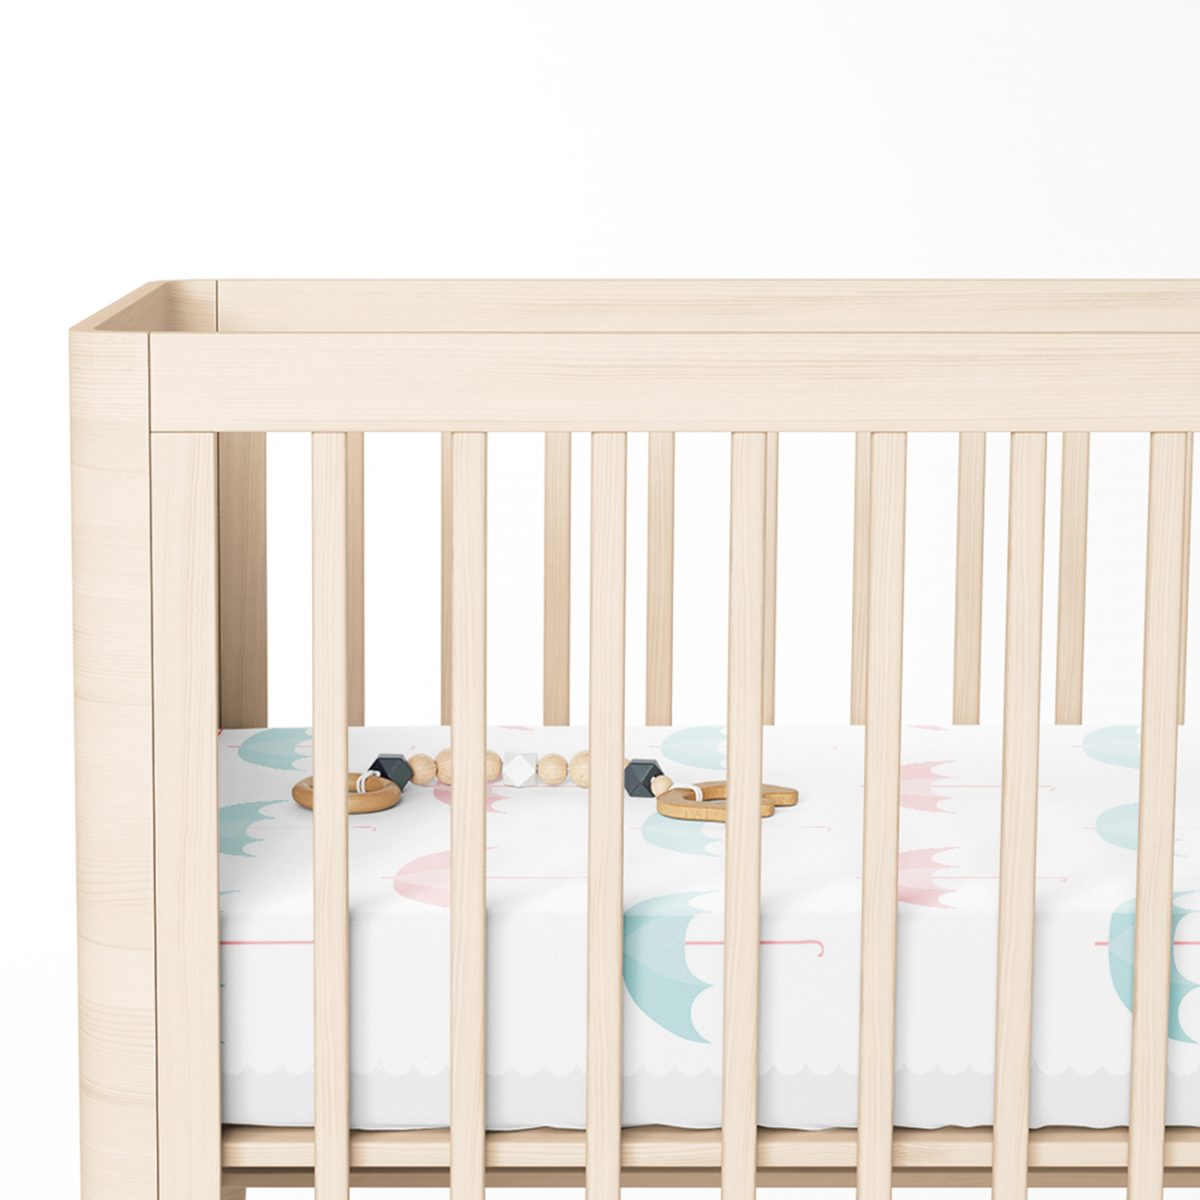 Renkli Şemsiyeler Özel Tasarımlı Bebek Odası Yatak Örtüsü Realhomes